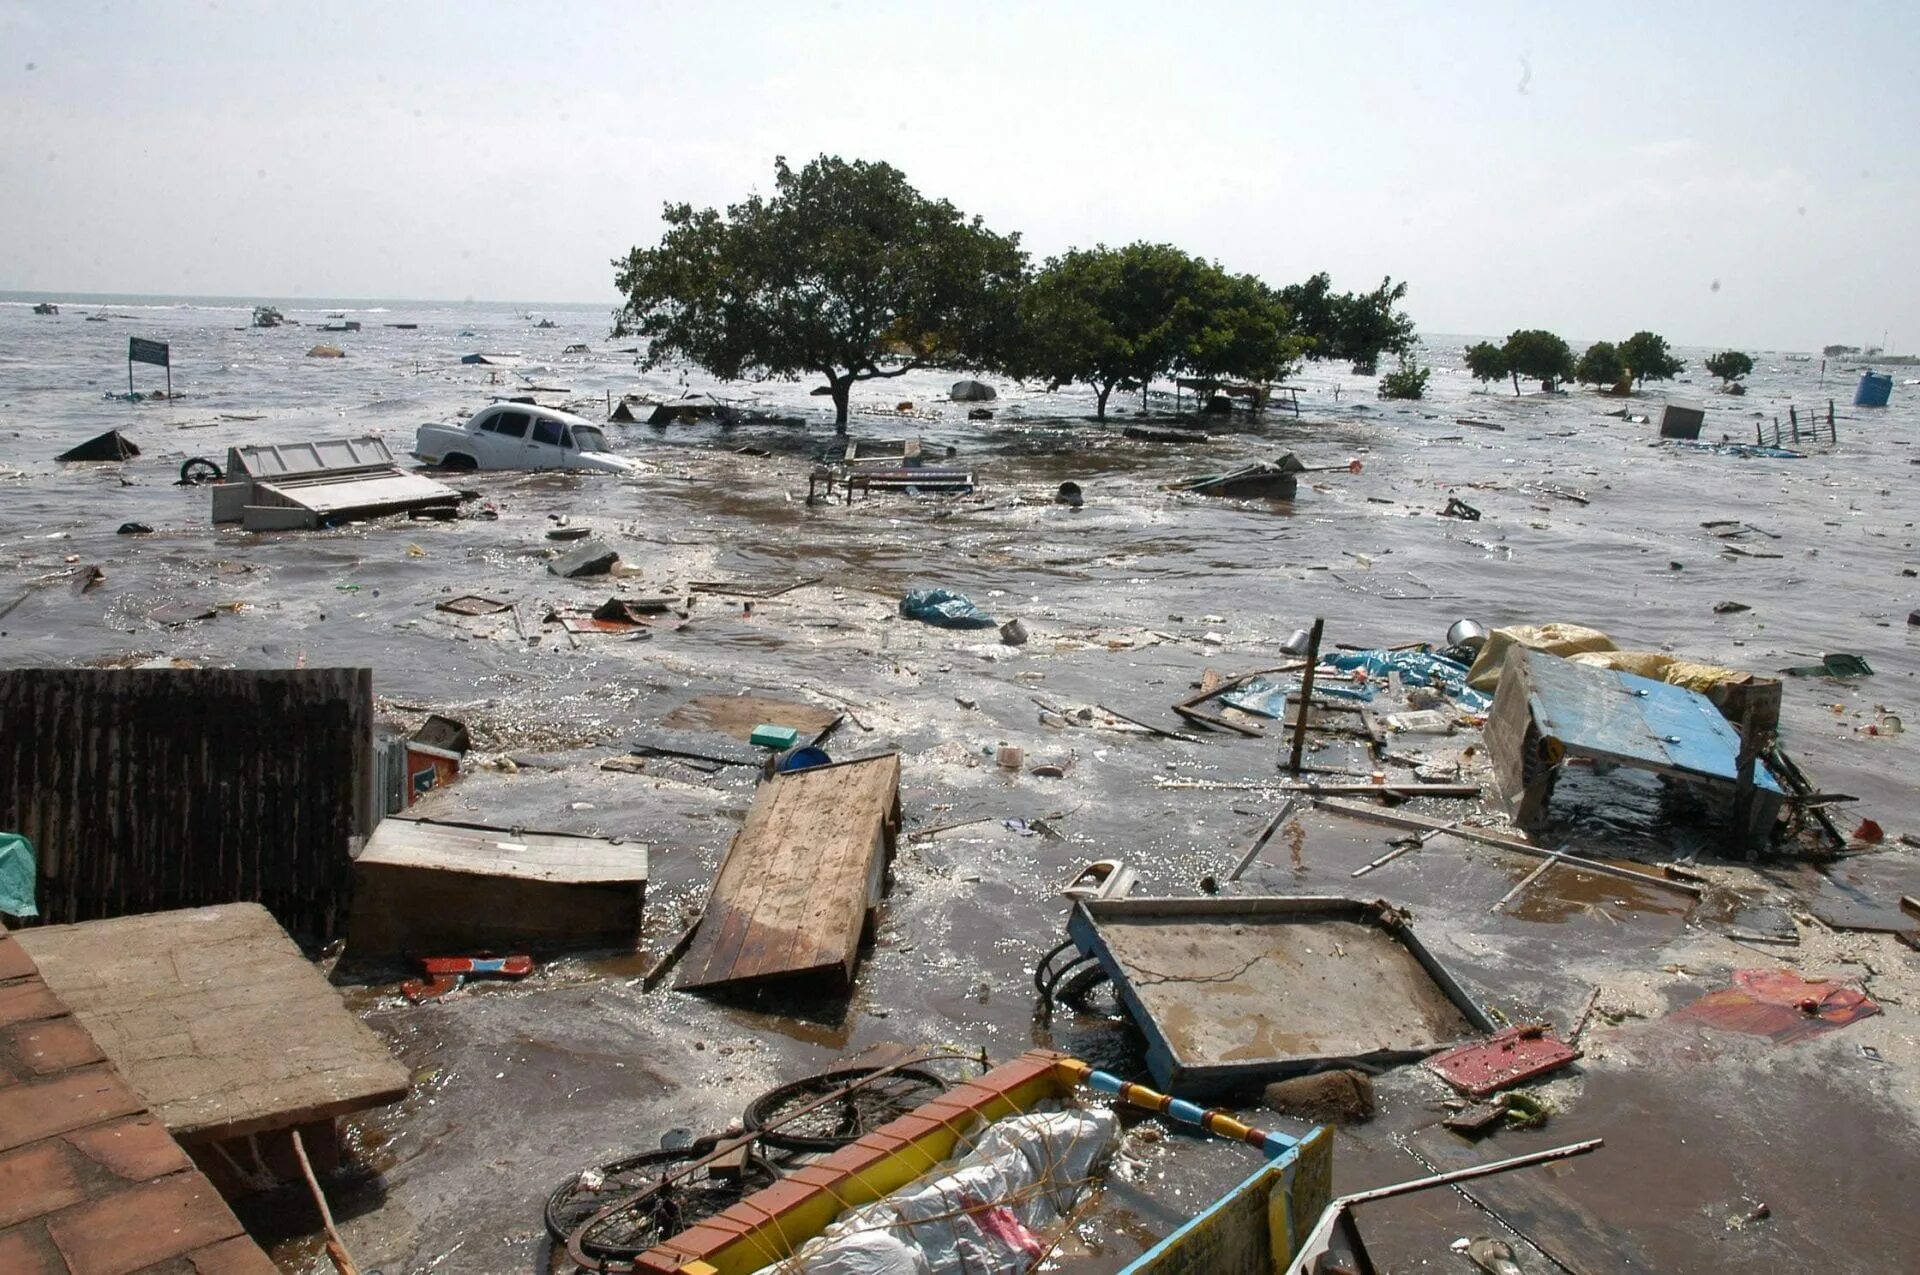 ЦУНАМИ 2004 года в индийском океане. Остров Суматра ЦУНАМИ 2004. Землетрясение в Индонезии 2004. 4 декабря 2004